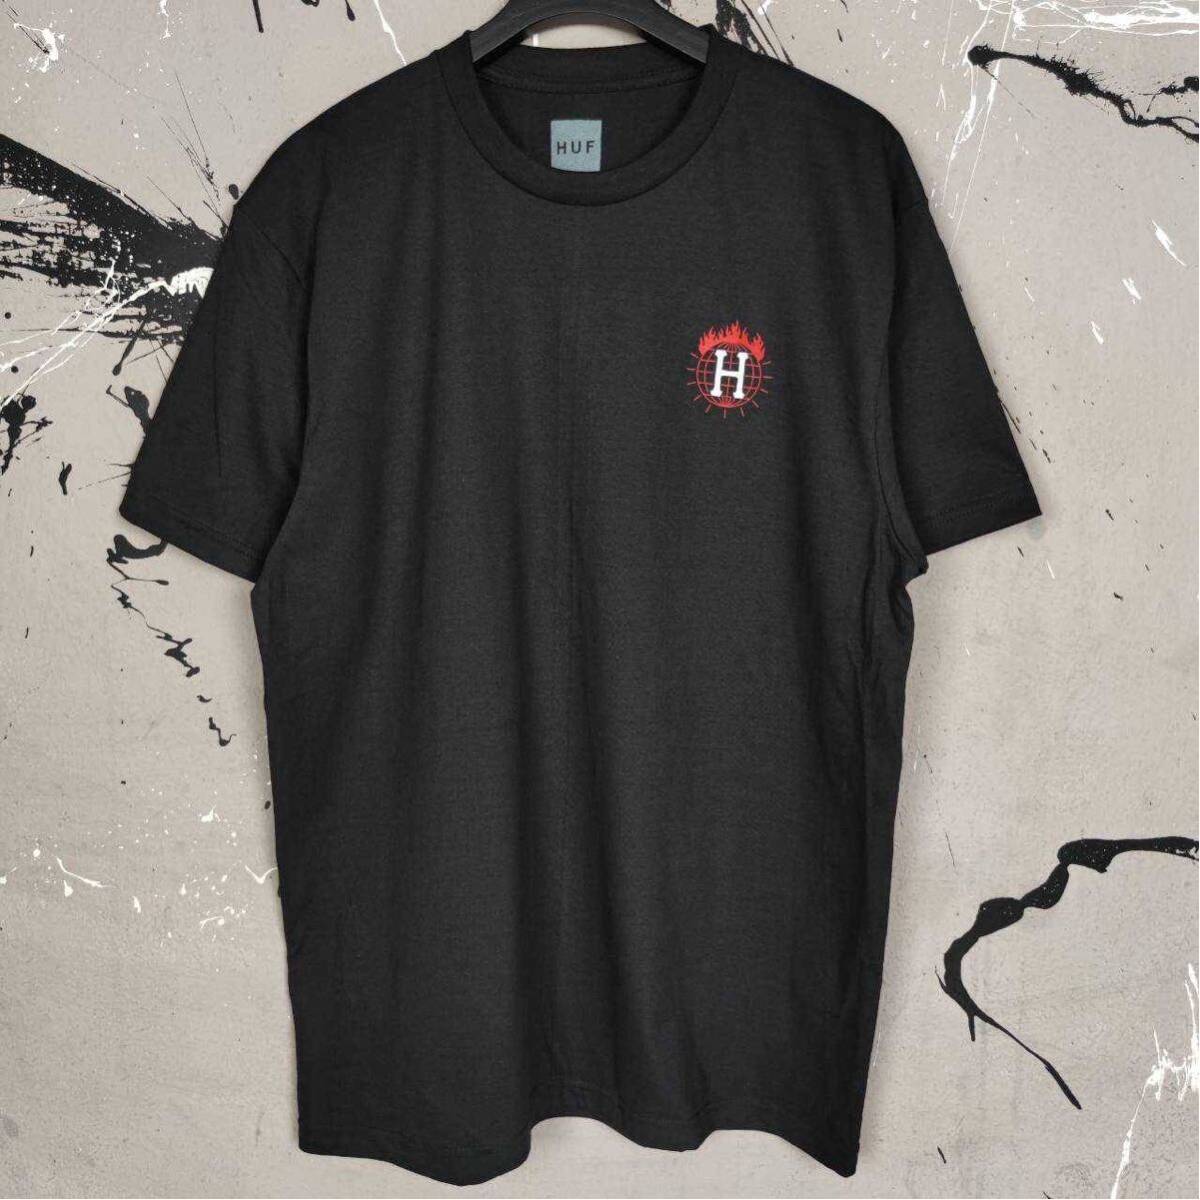 Tシャツ 黒 半袖 スラッシャー HUF ストリート系 スケボー スノボー サーフィン スケードボード Mサイズ_画像4